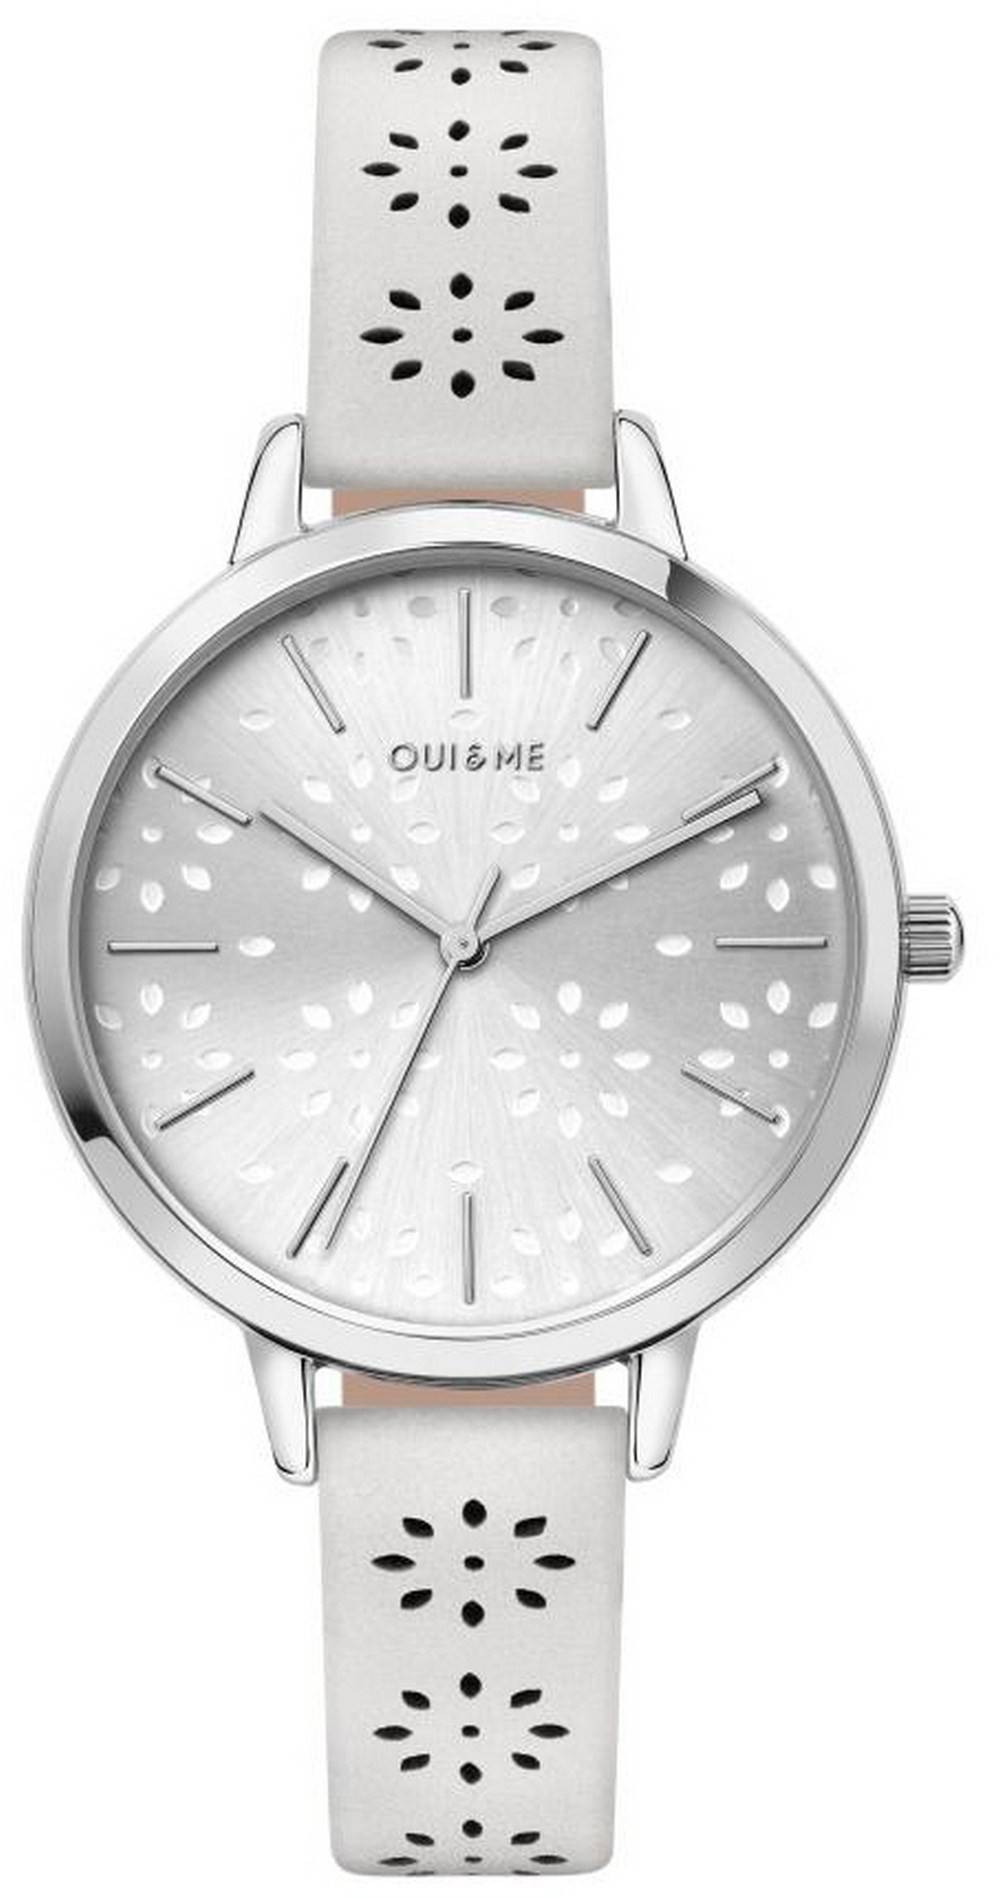 Oui & Me Amourette Silver Sunray Dial Leather Strap Quartz ME010148 Women's Watch